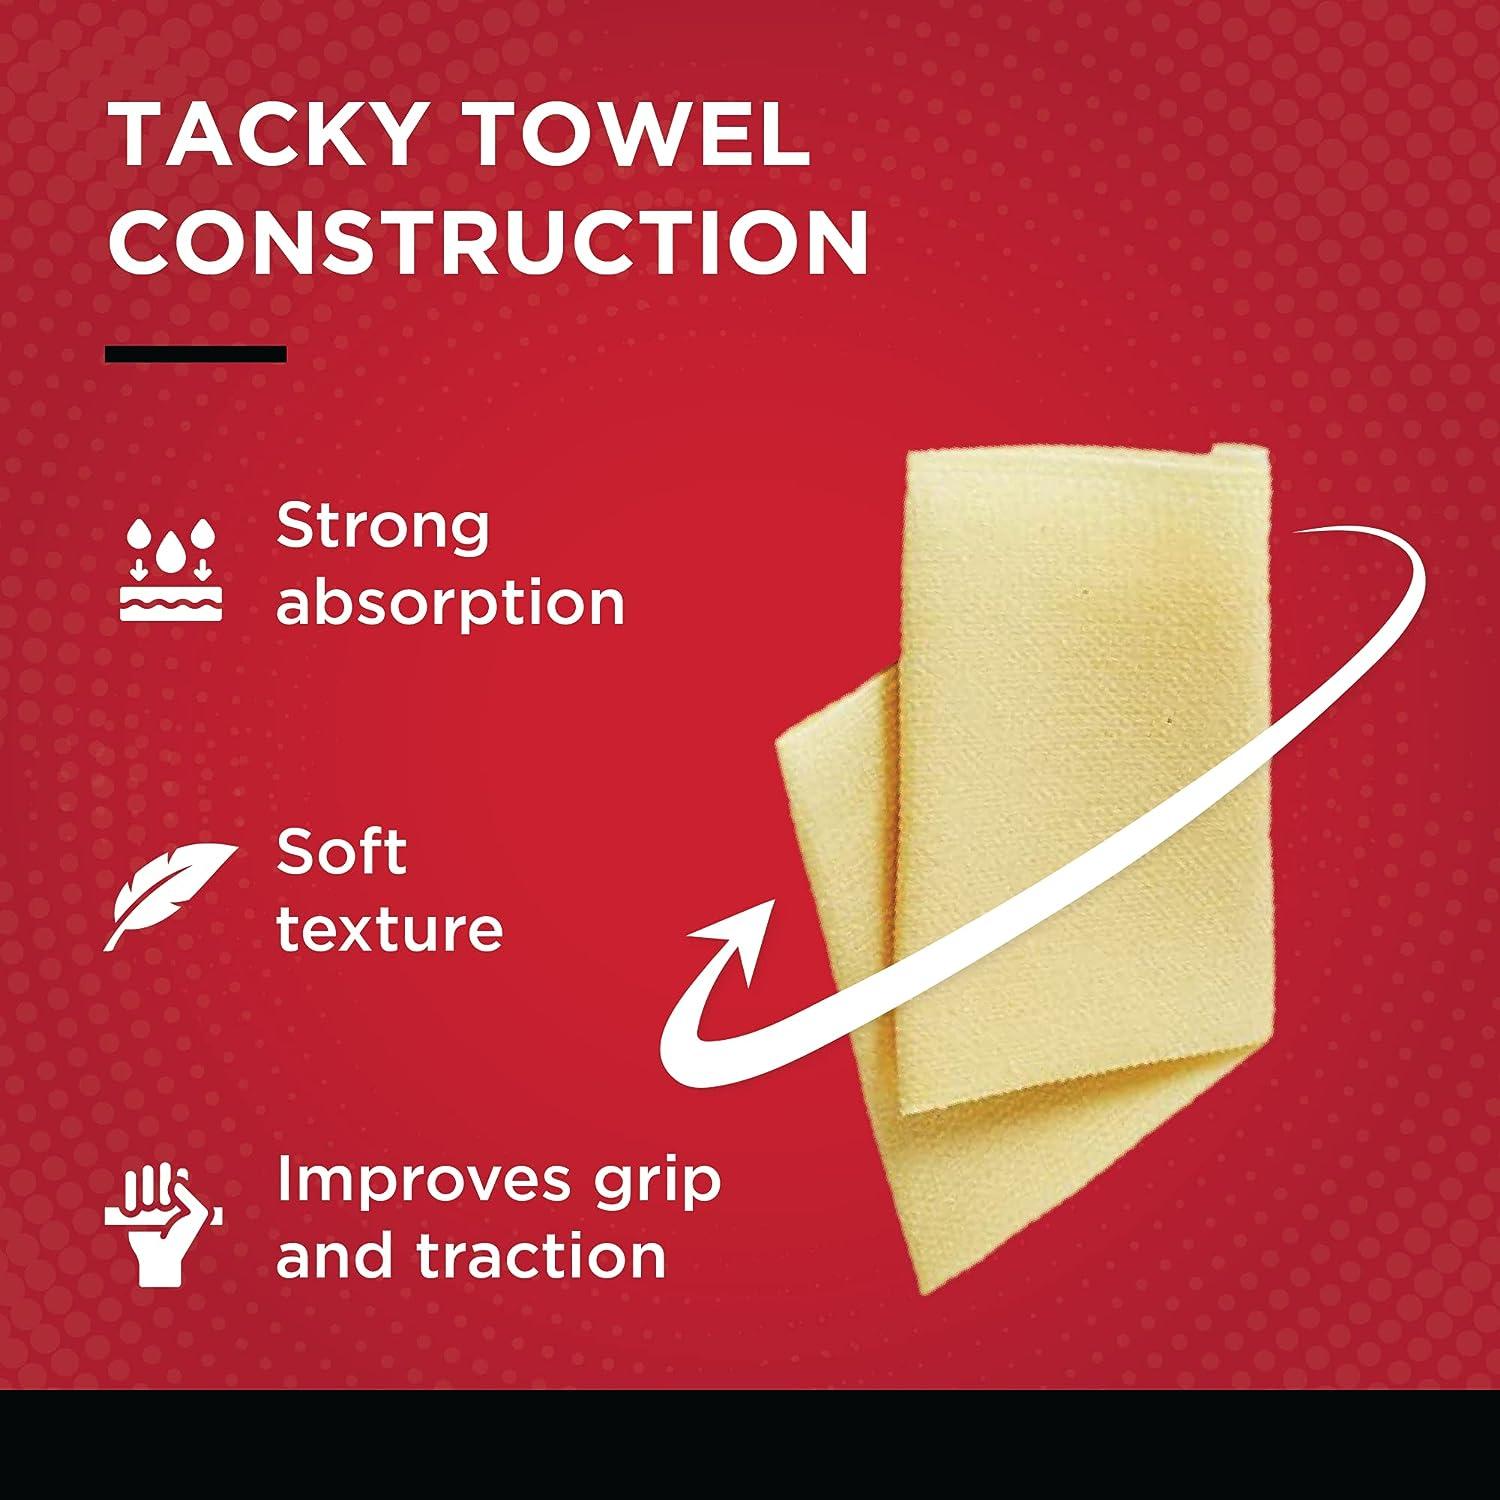 Tacky Towels